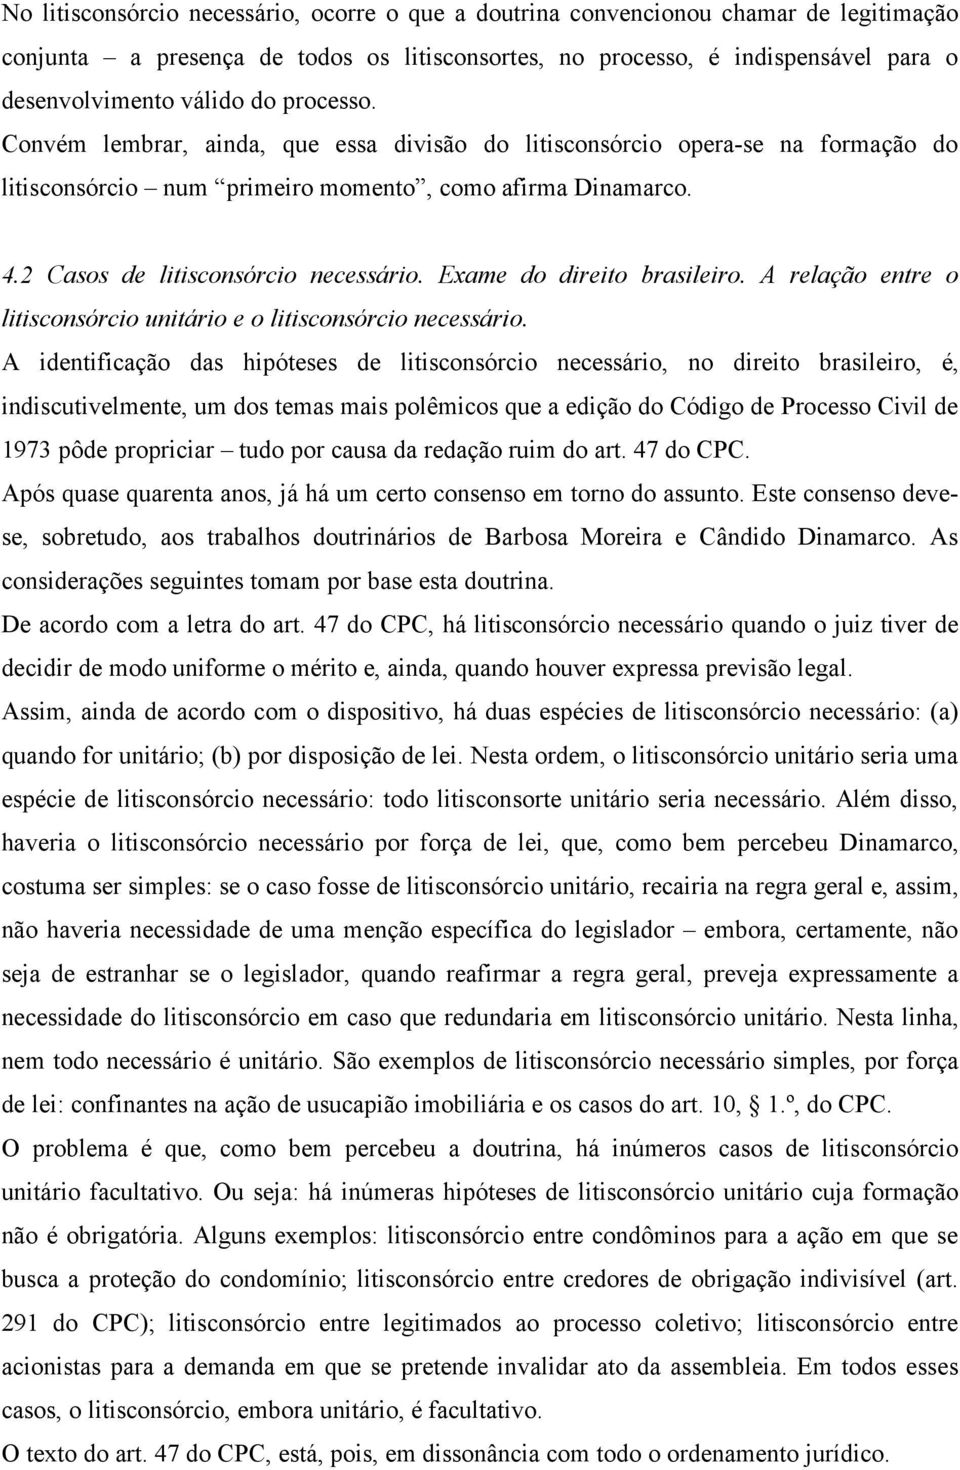 Exame do direito brasileiro. A relação entre o litisconsórcio unitário e o litisconsórcio necessário.